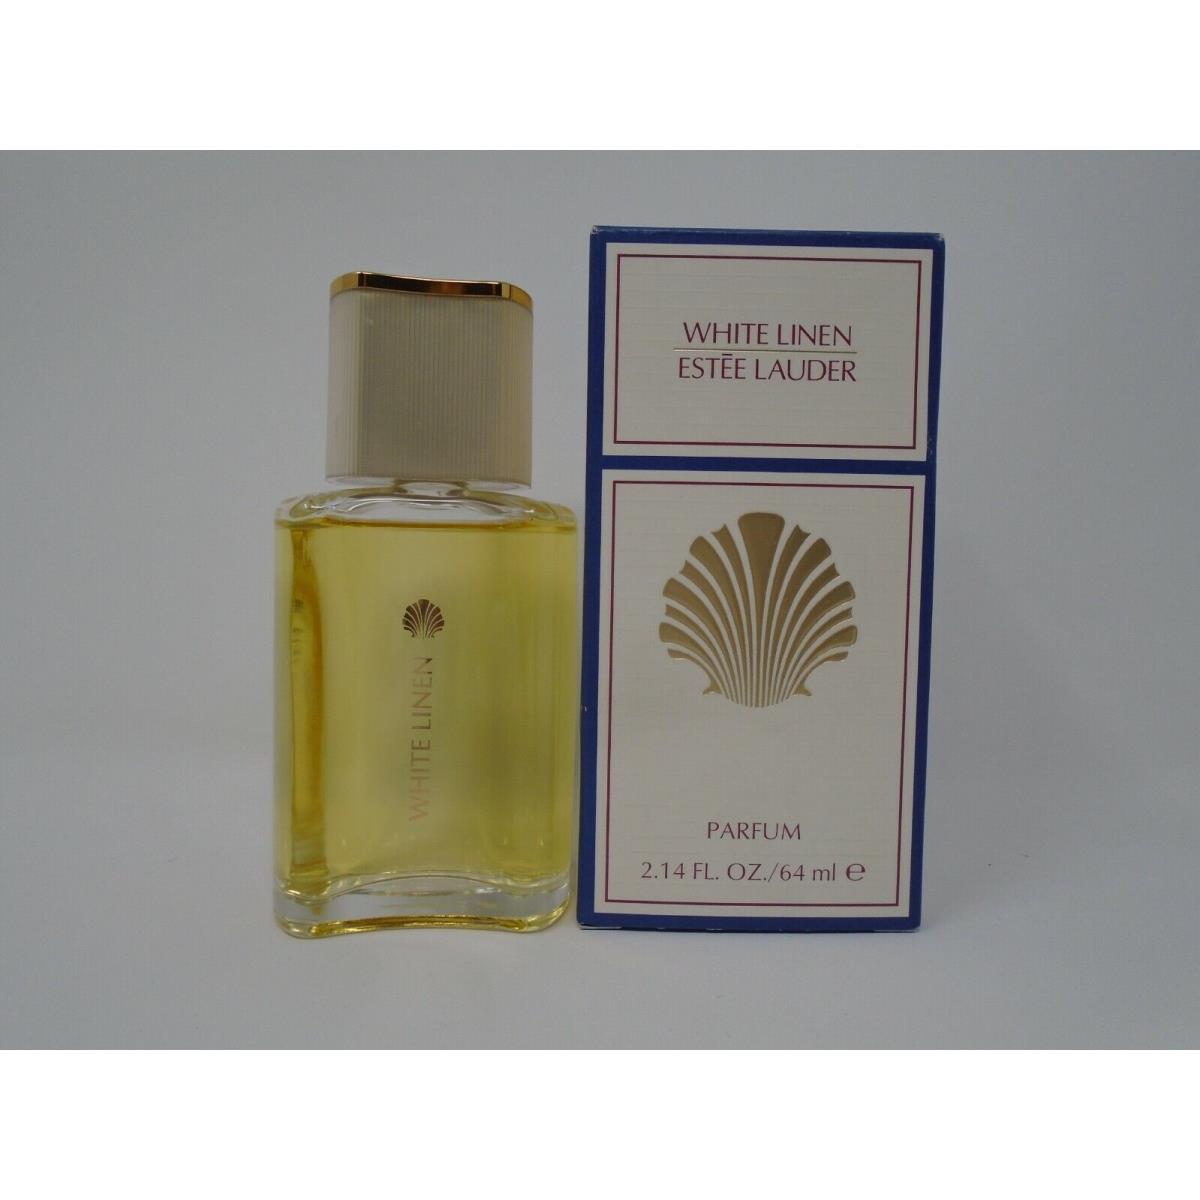 Estee Lauder White Linen 2.14 oz / 64 ml Parfum Splash For Women